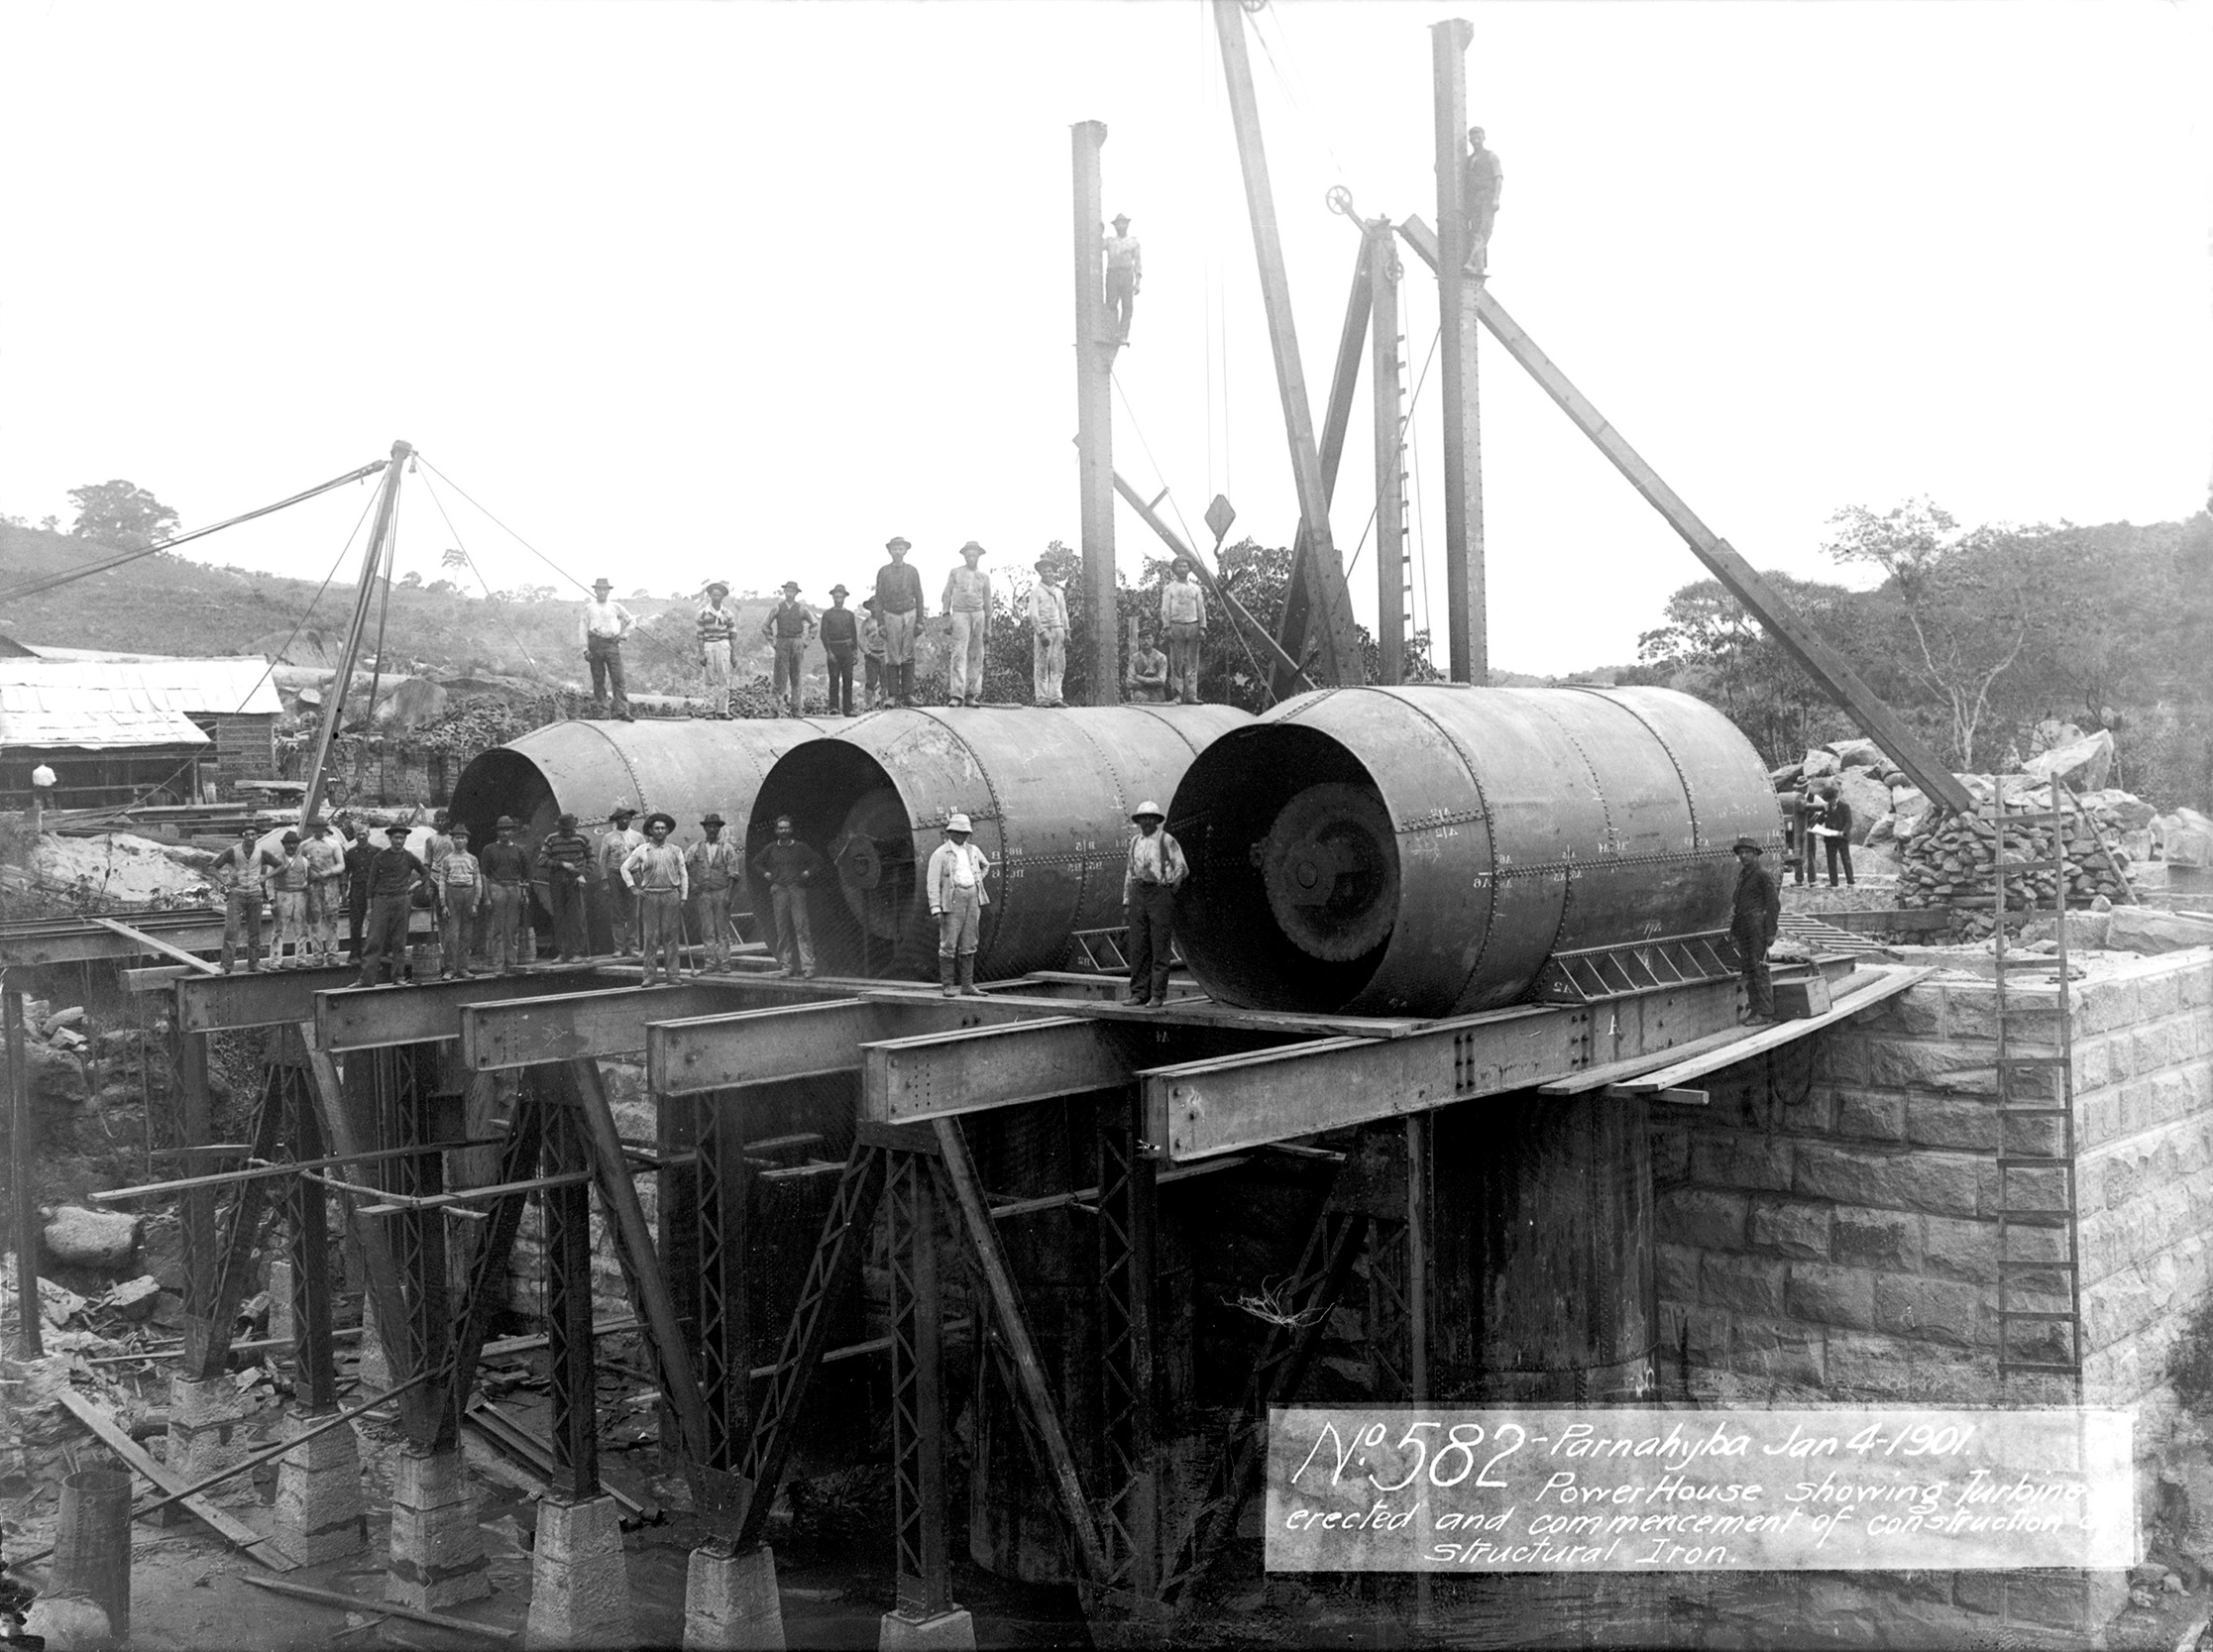 Exposição virtual “120 anos da Usina de Parnahyba” traz imagens históricas sobre a primeira hidrelétrica a abastecer a capital paulista